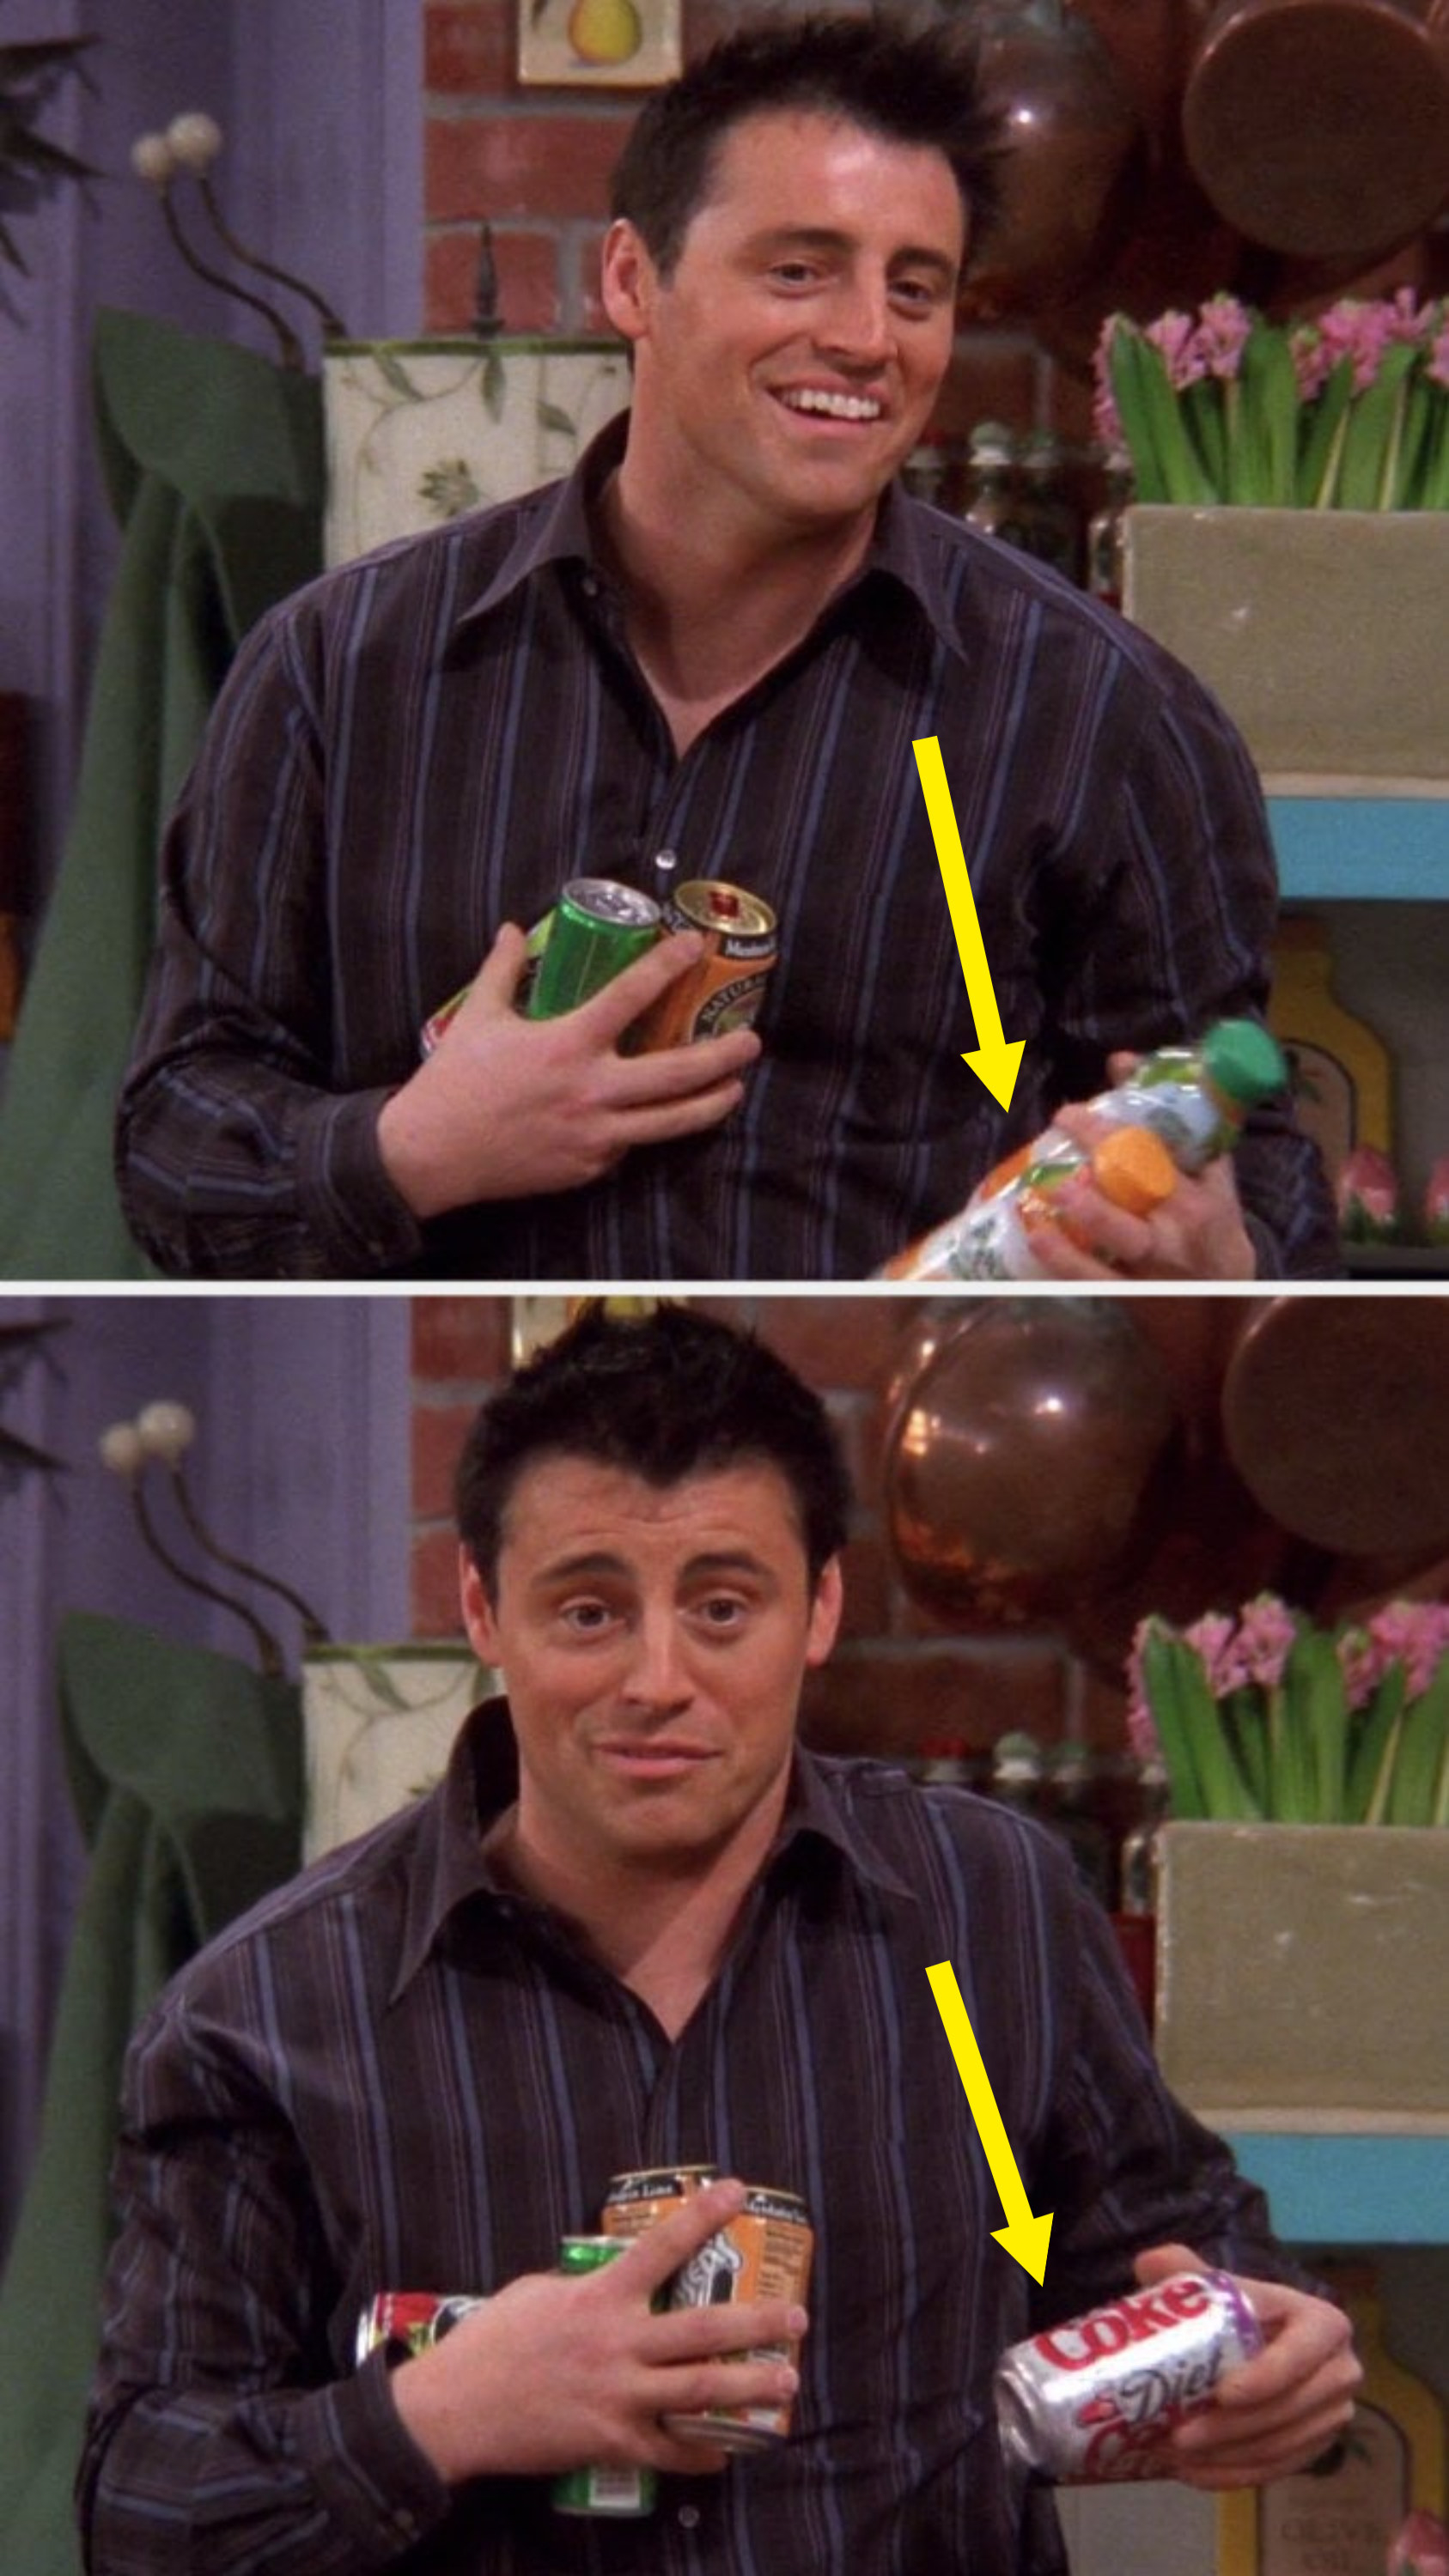 Joey is holding juice in his left hand, then he&#x27;s got Coke in his left hand